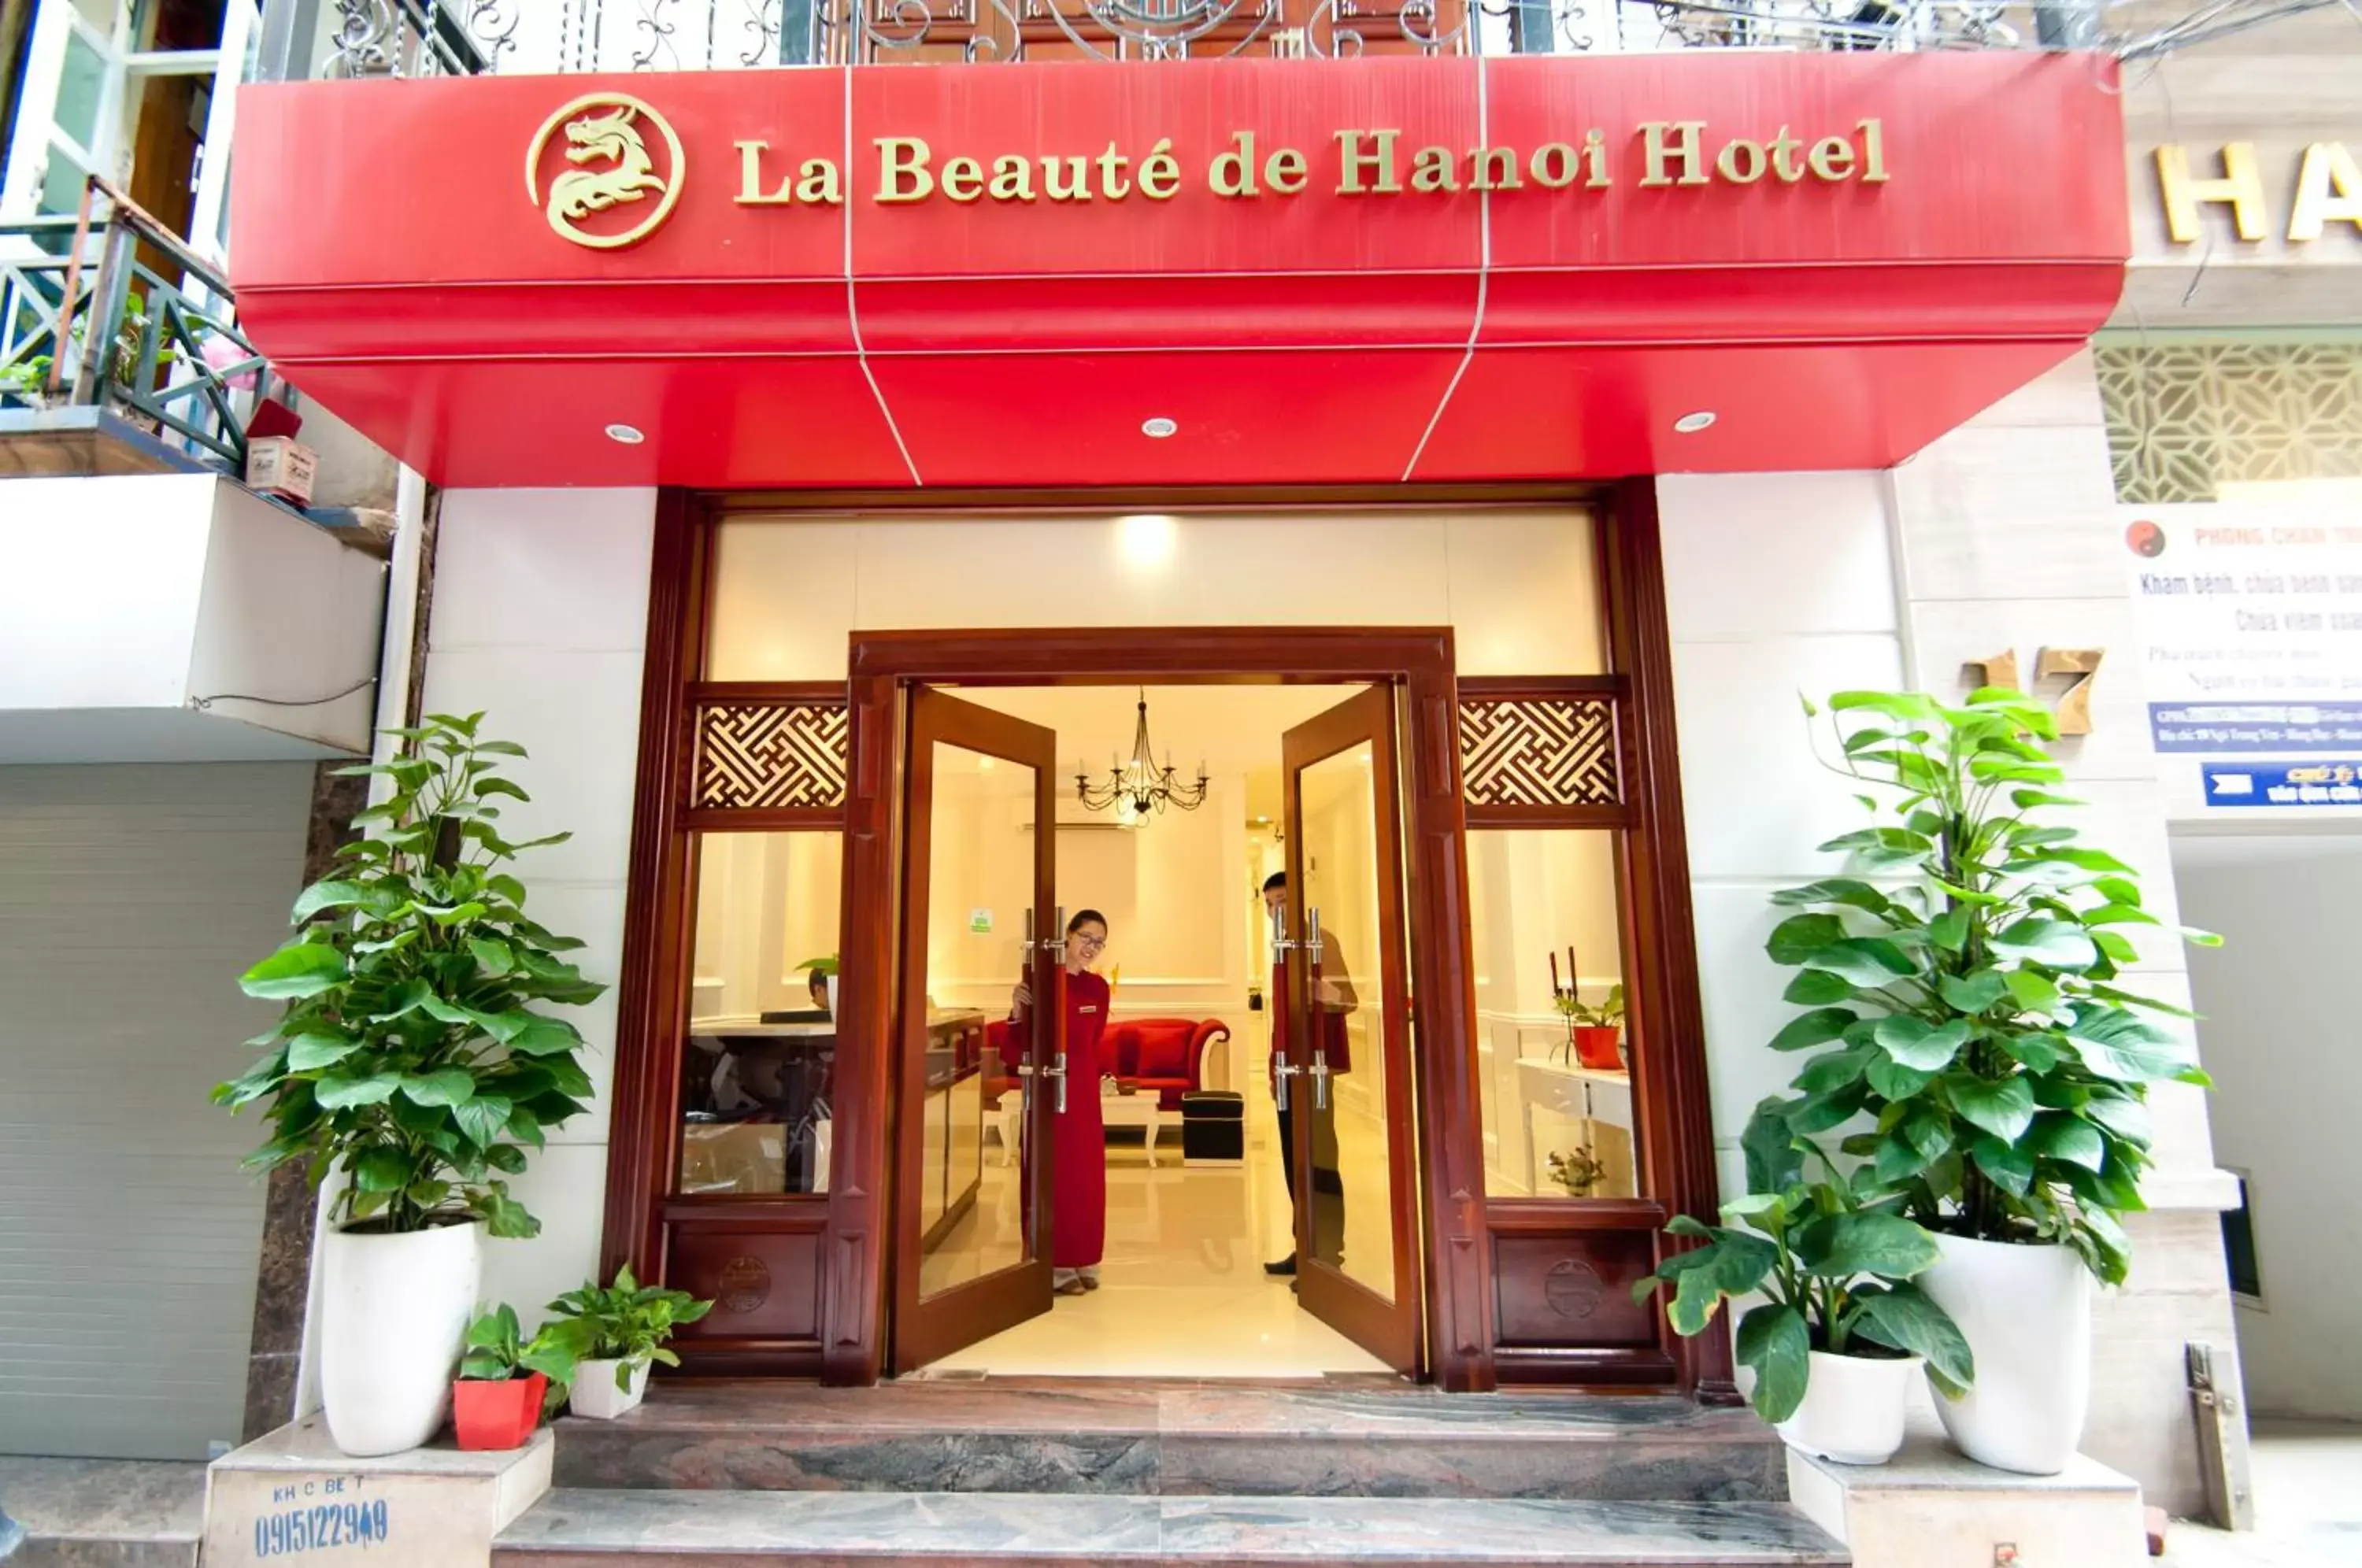 Facade/Entrance in La Beaute De Hanoi Hotel